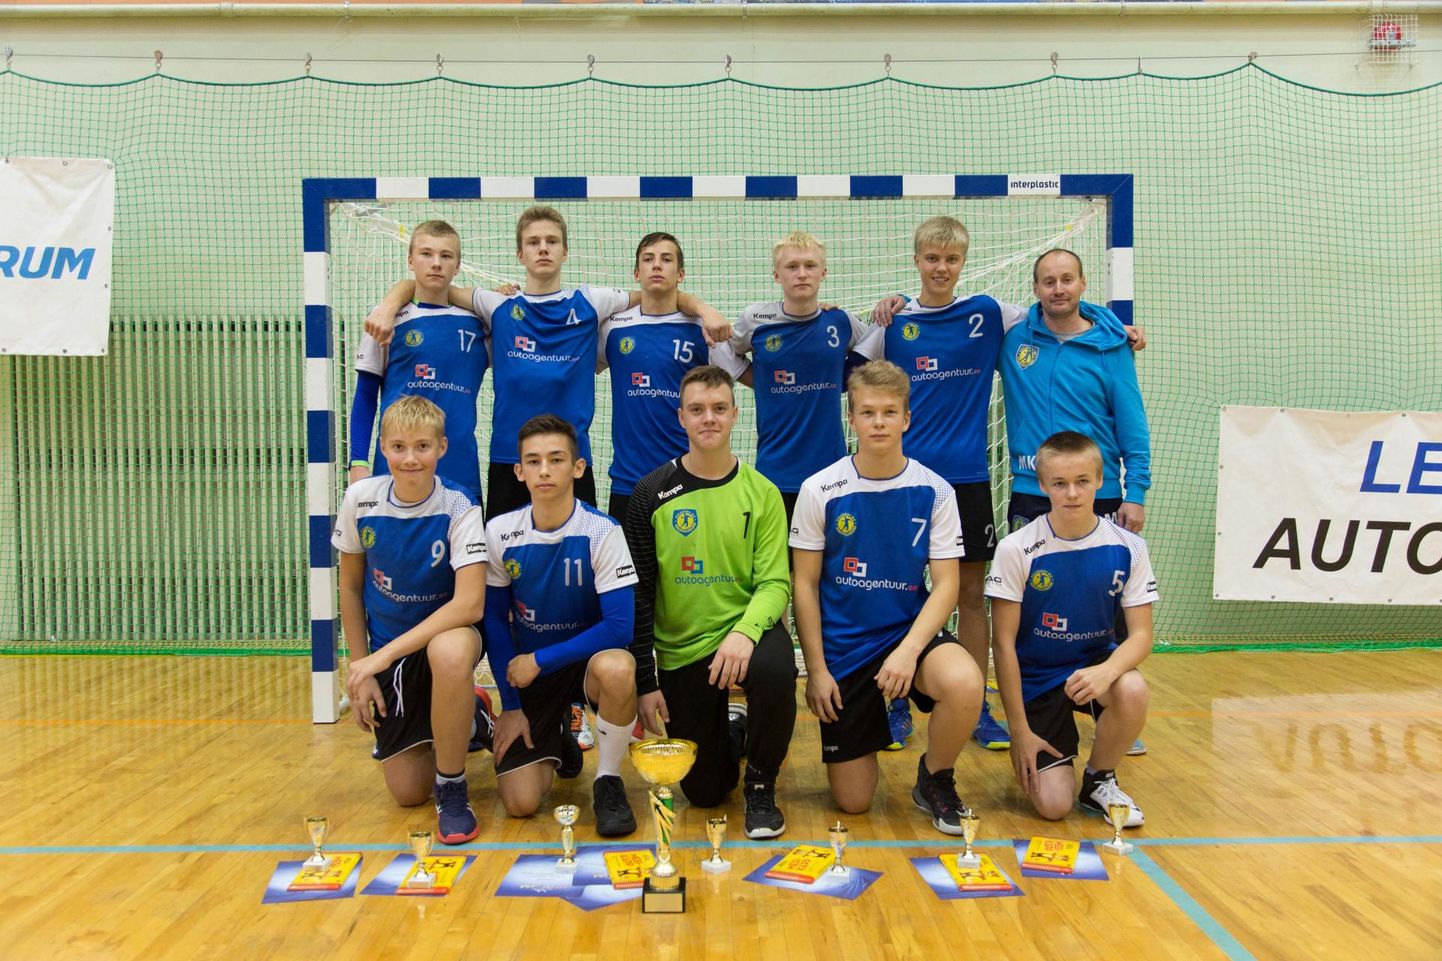 Eesti B-vanuseklassi käsipallikarikavõistluste finaalturniir lõppes kohalikele noormeestele kuldselt.